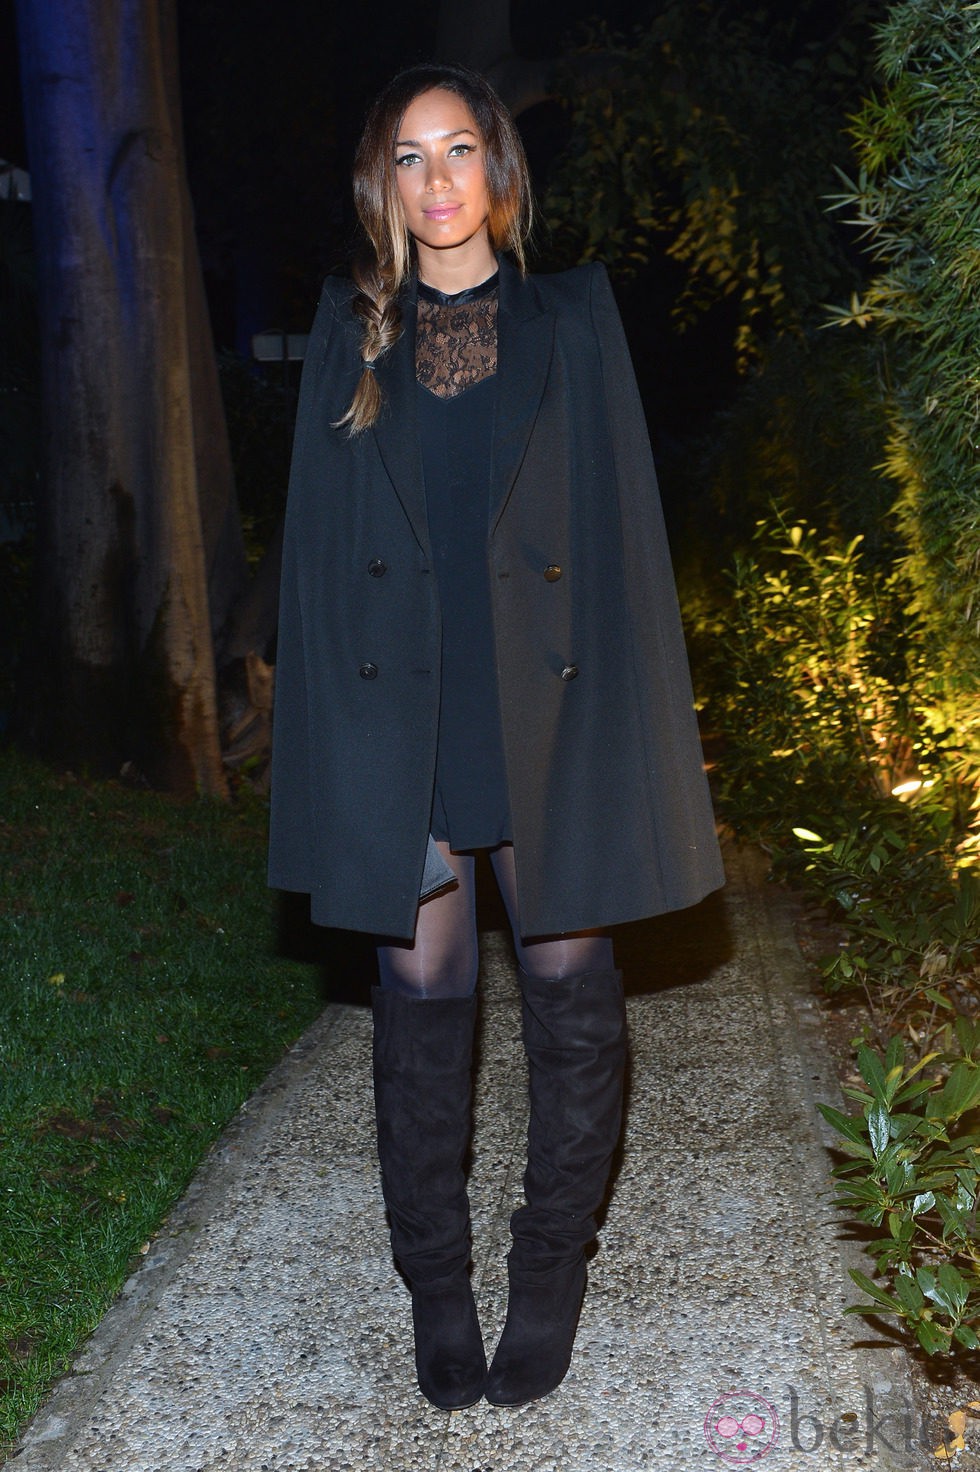 Leona Lewis apoya a Cavalli en la Semana de la Moda de Milán